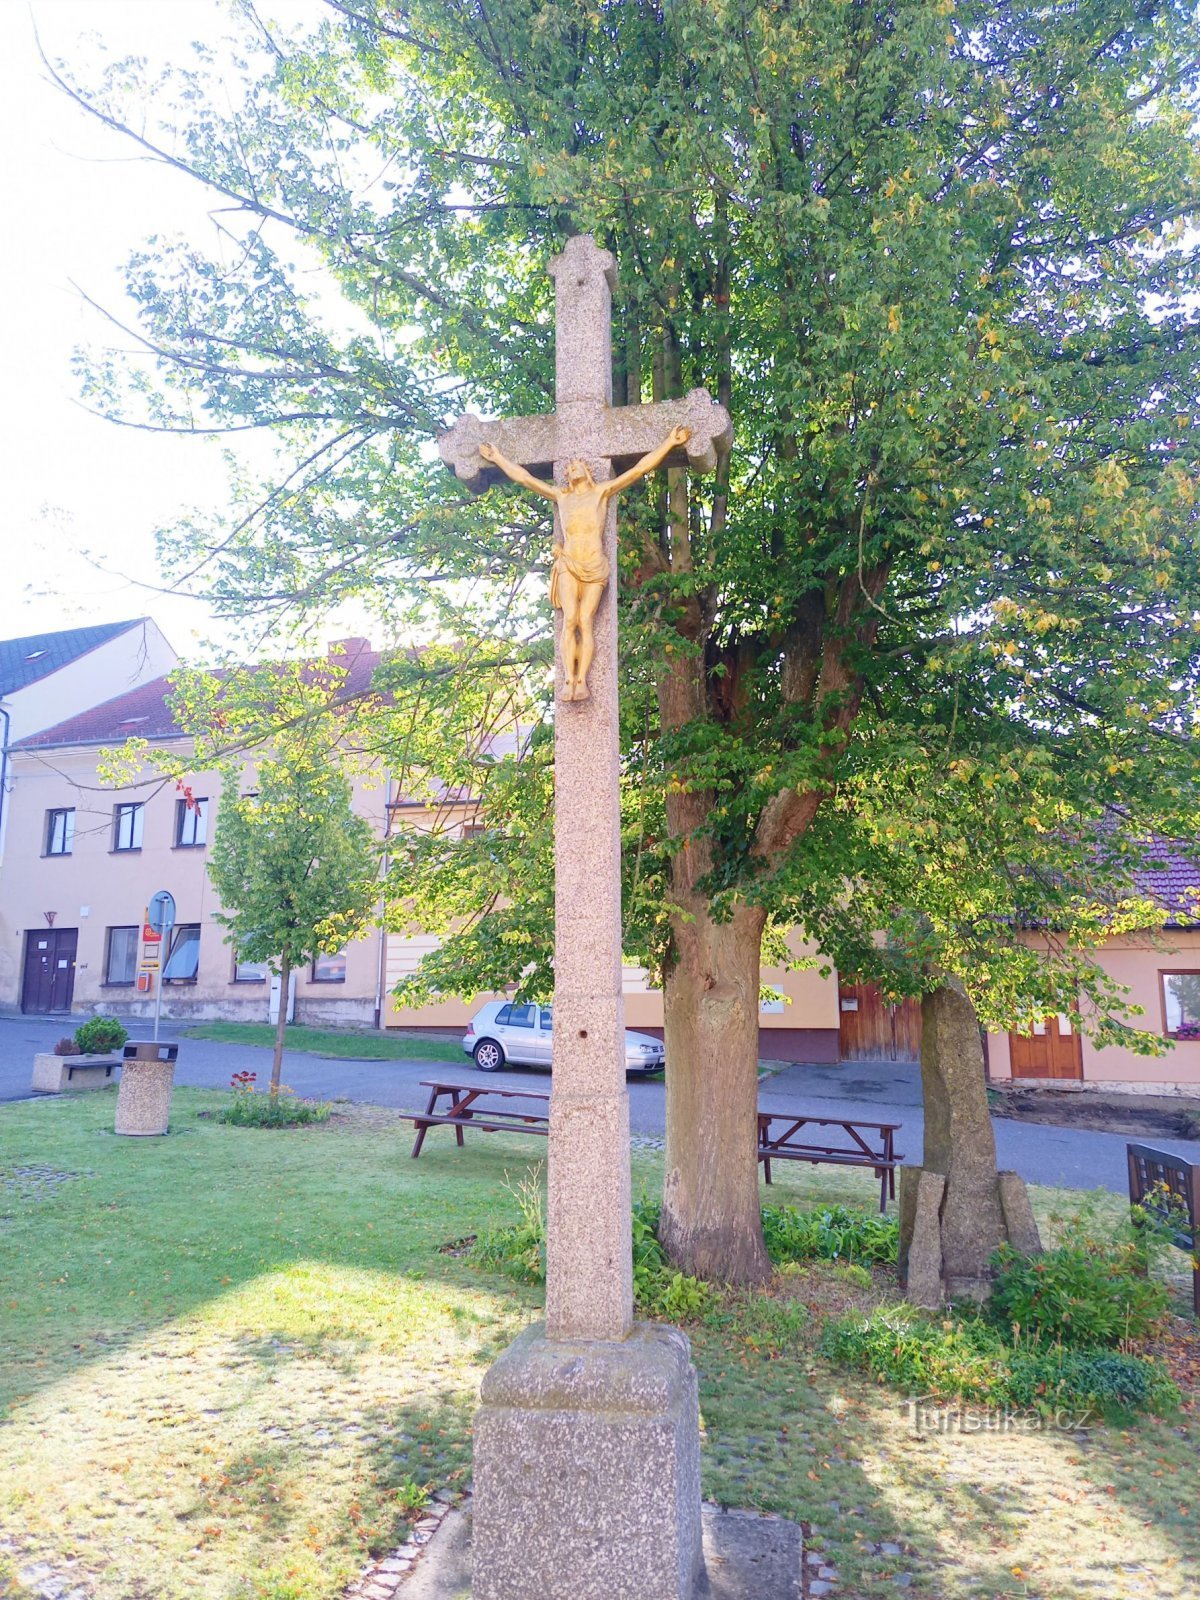 2. Σταυρός από το 1852 στην πλατεία Prokop Chocholouška